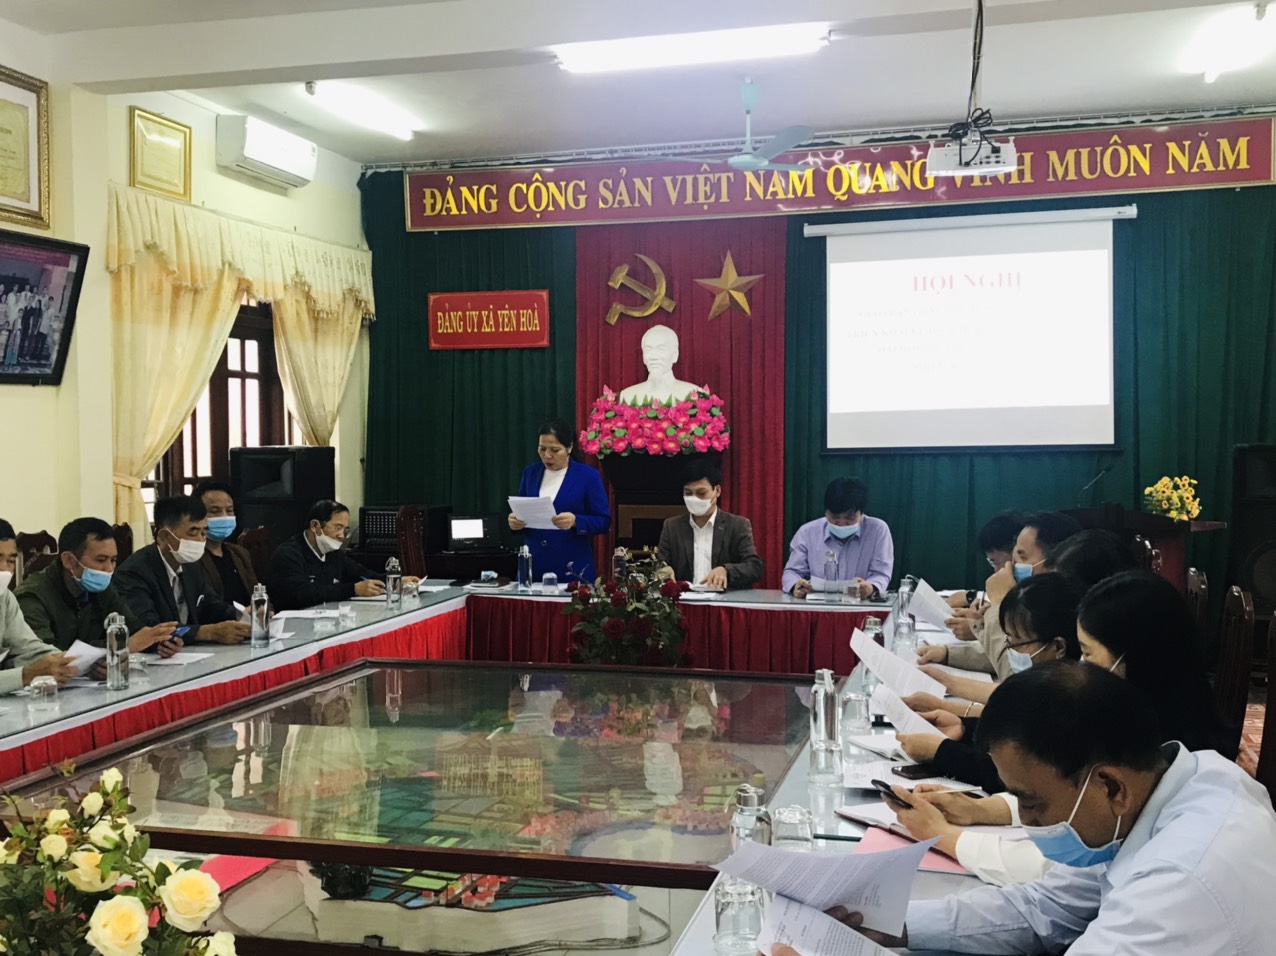 Yên Hòa tổ chức hội nghị giao ban công tác đảng tháng 3, phướng hướng nhiệm vụ công tác tháng 4 và triển khai kế hoạch tổ chức đại hội chi bộ trực thuộc nhiệm kỳ 2022-2025.